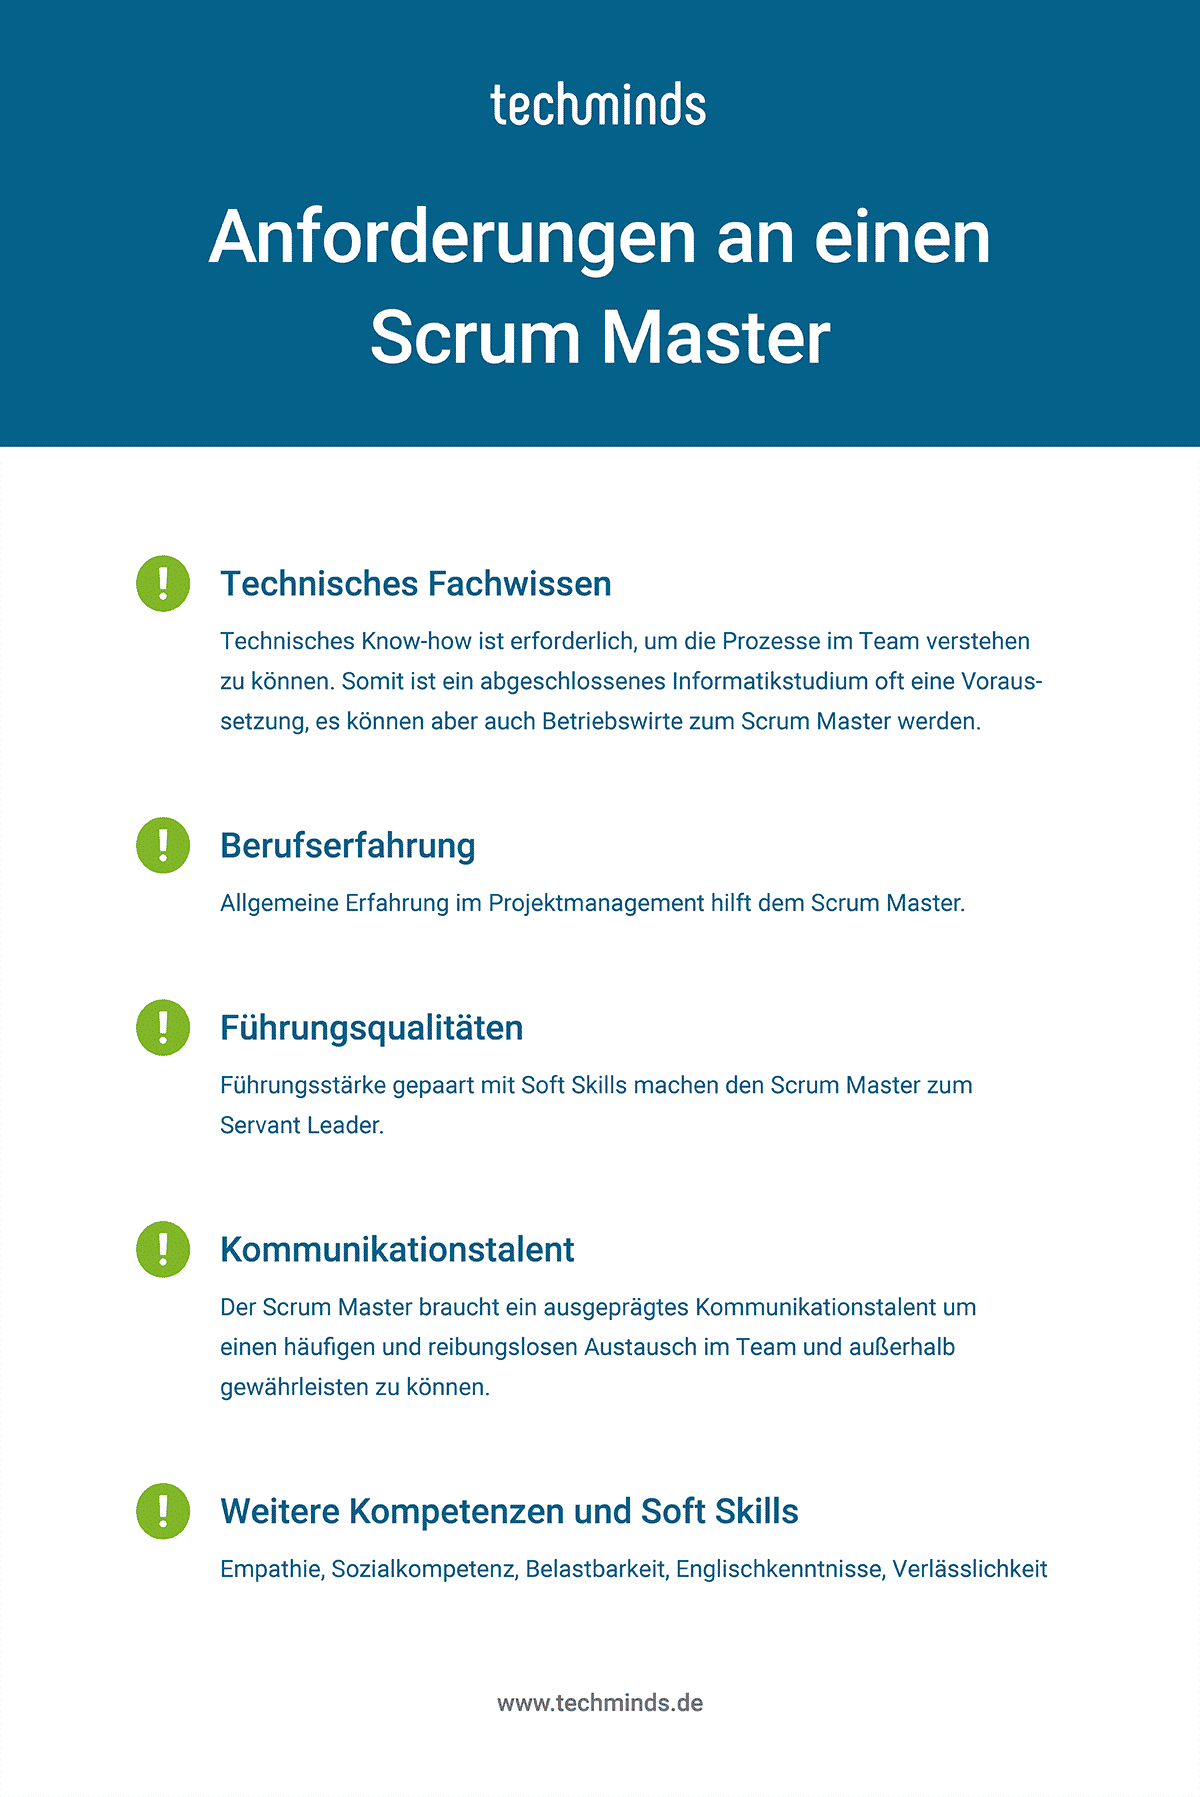 Anforderungen Scrum Master

